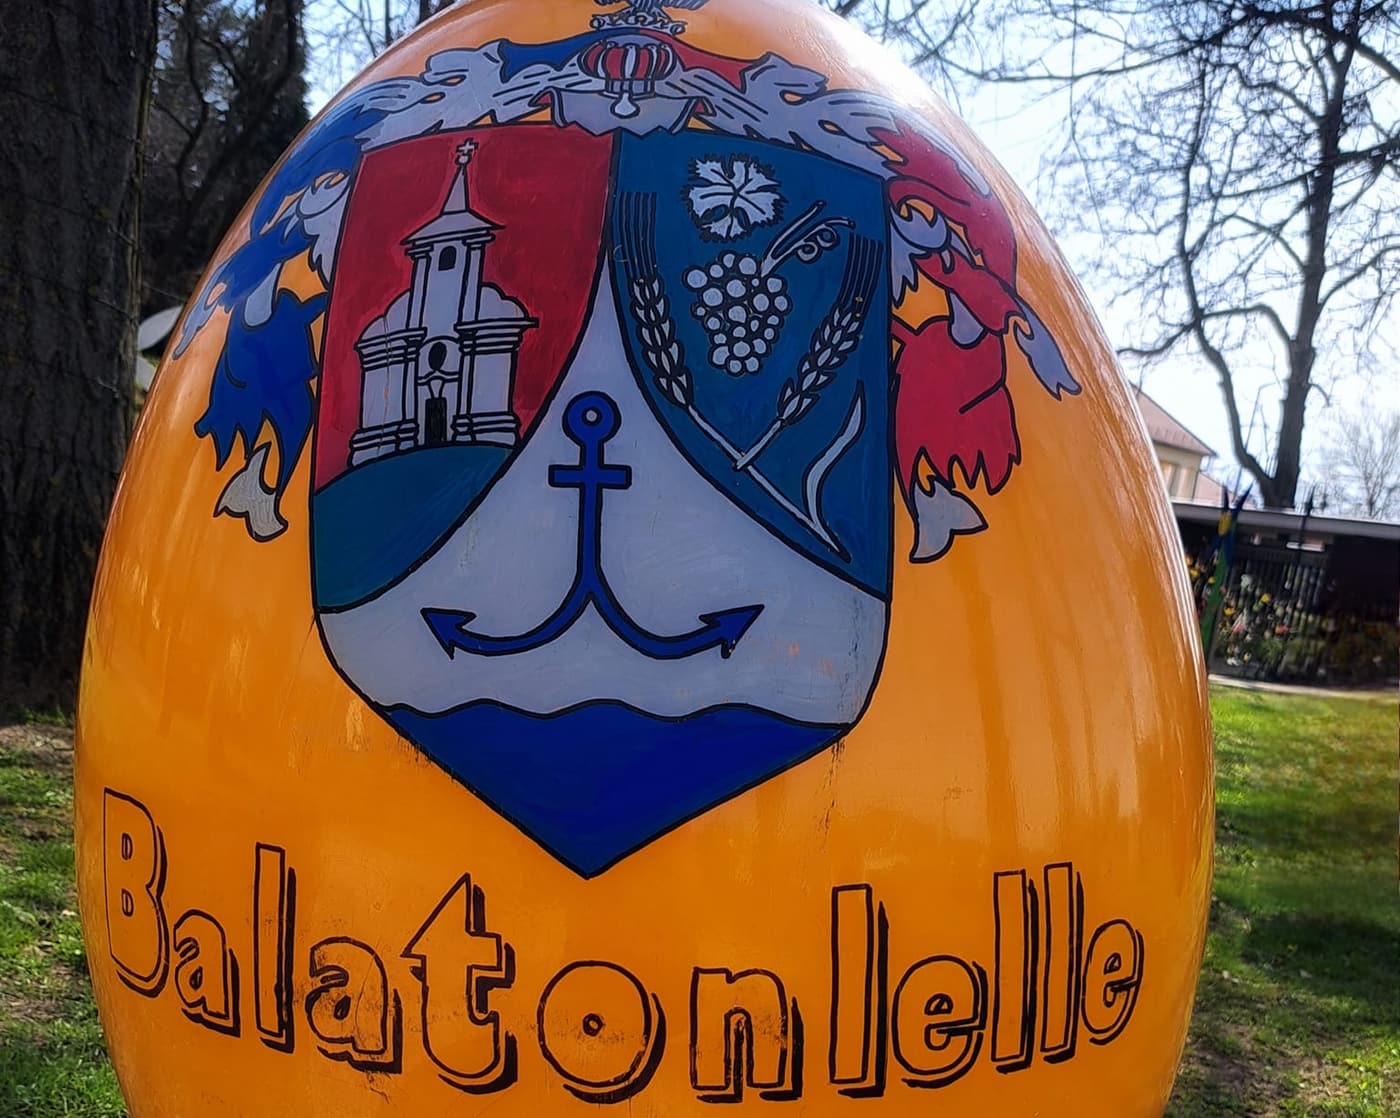 Március 23-án nyitják meg a Húsvéti parkot Balatonlelle szívében